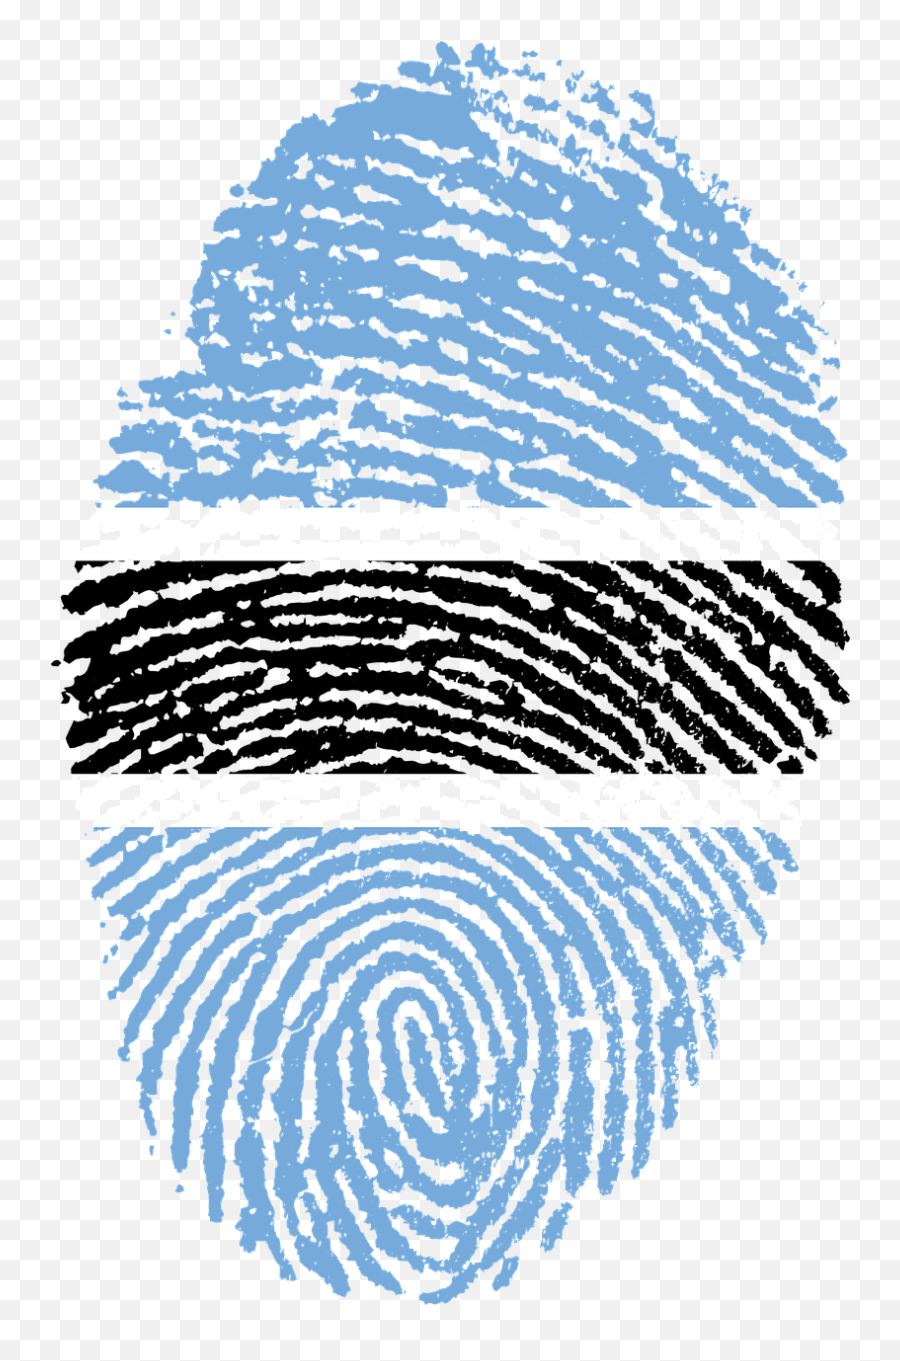 Uploads Fingerprint Fingerprint Png23 - Png Press Philippine Flag Fingerprint Png Emoji,Thumbprint Png